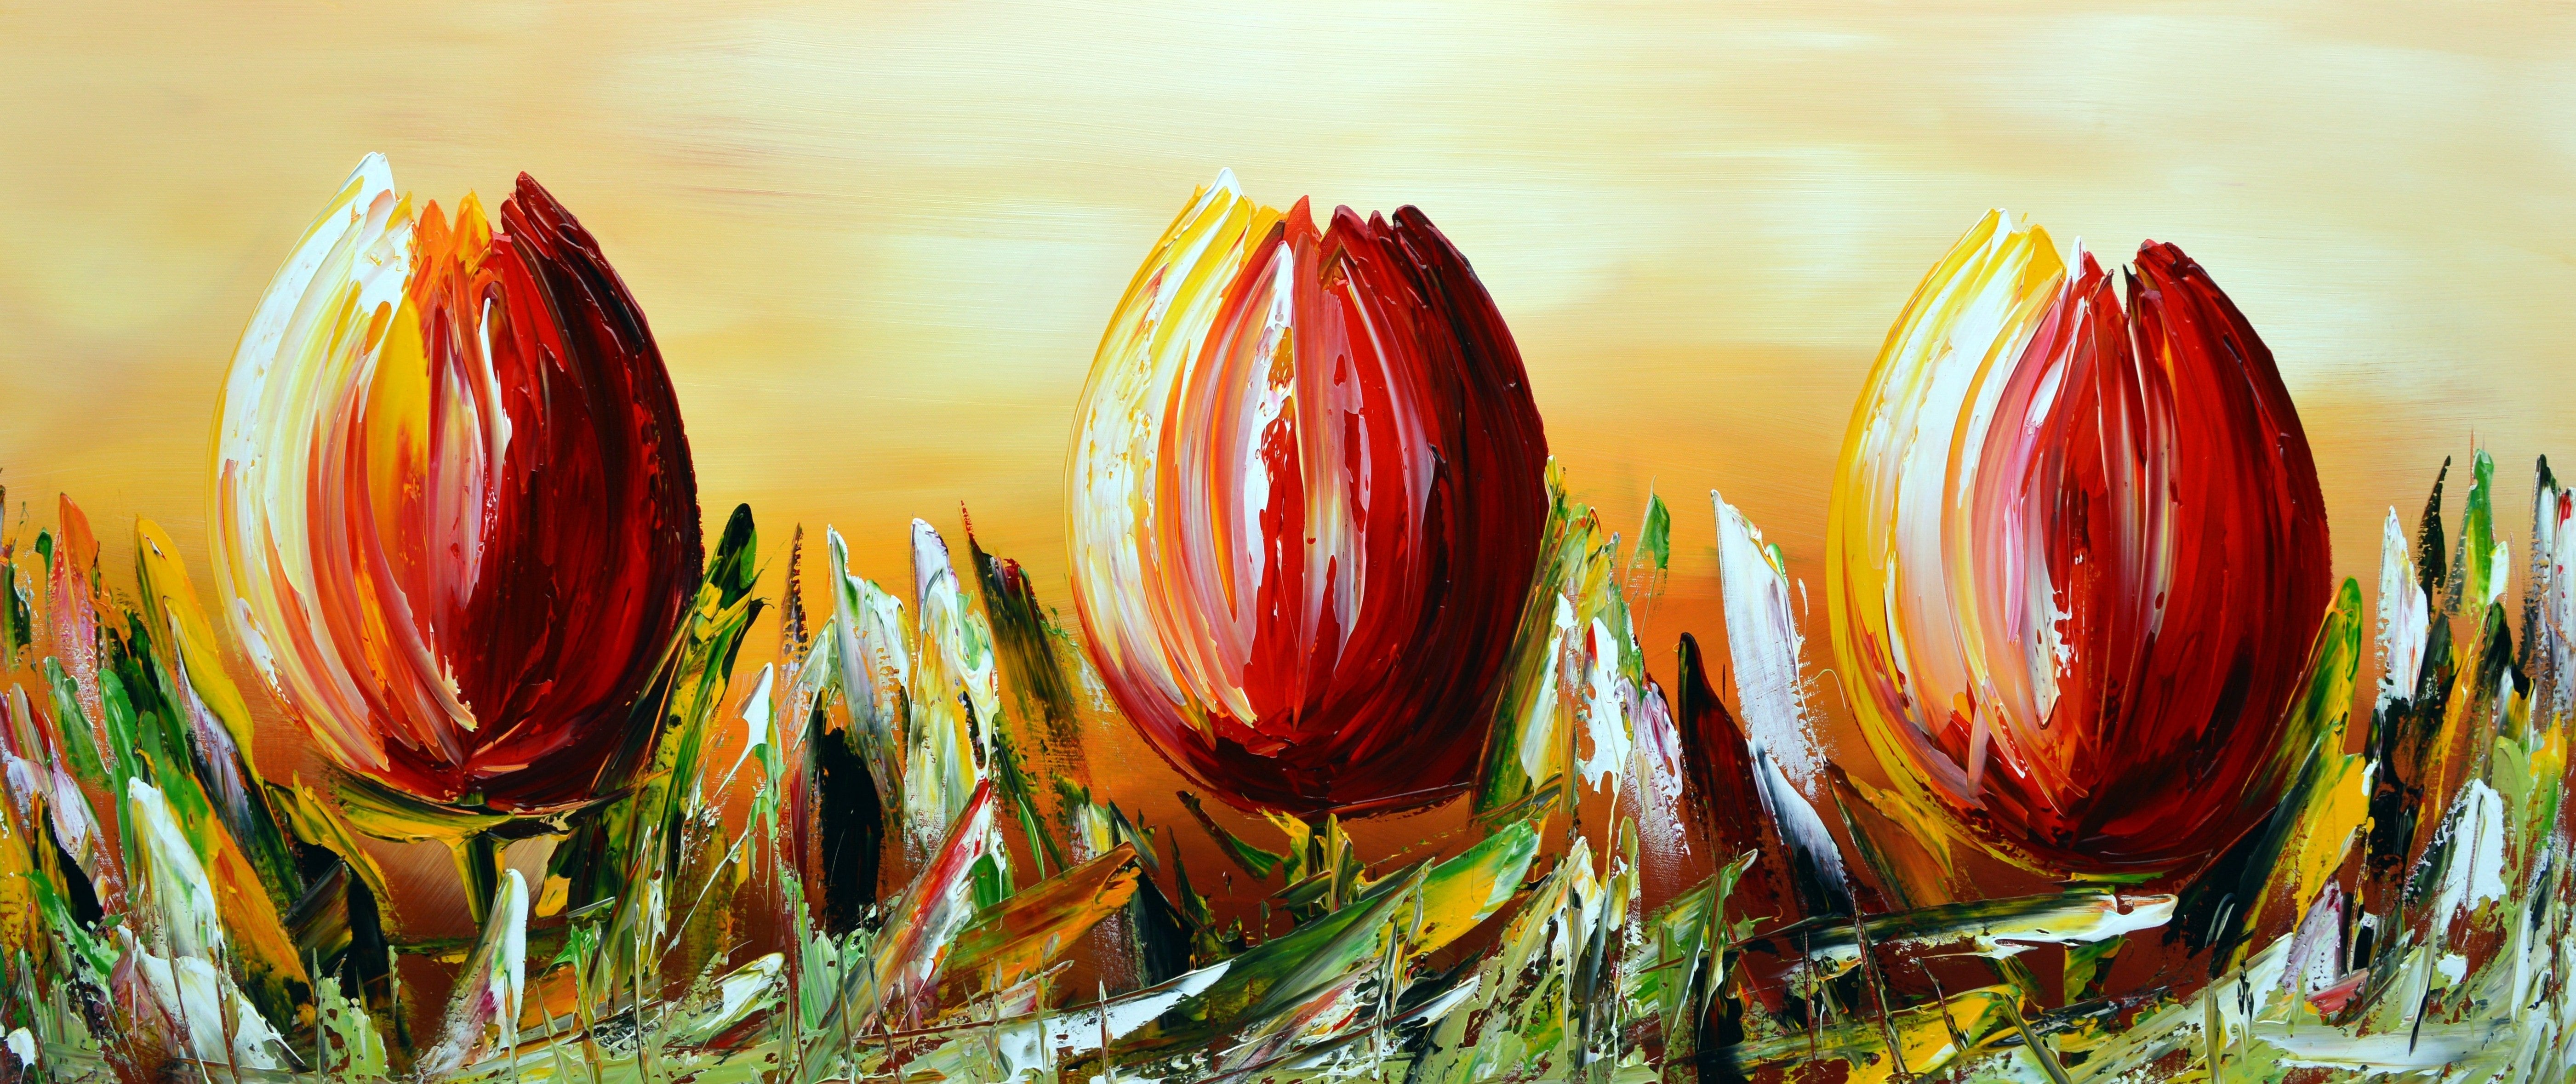 Gena - Tulpen XII | Giclée op canvas